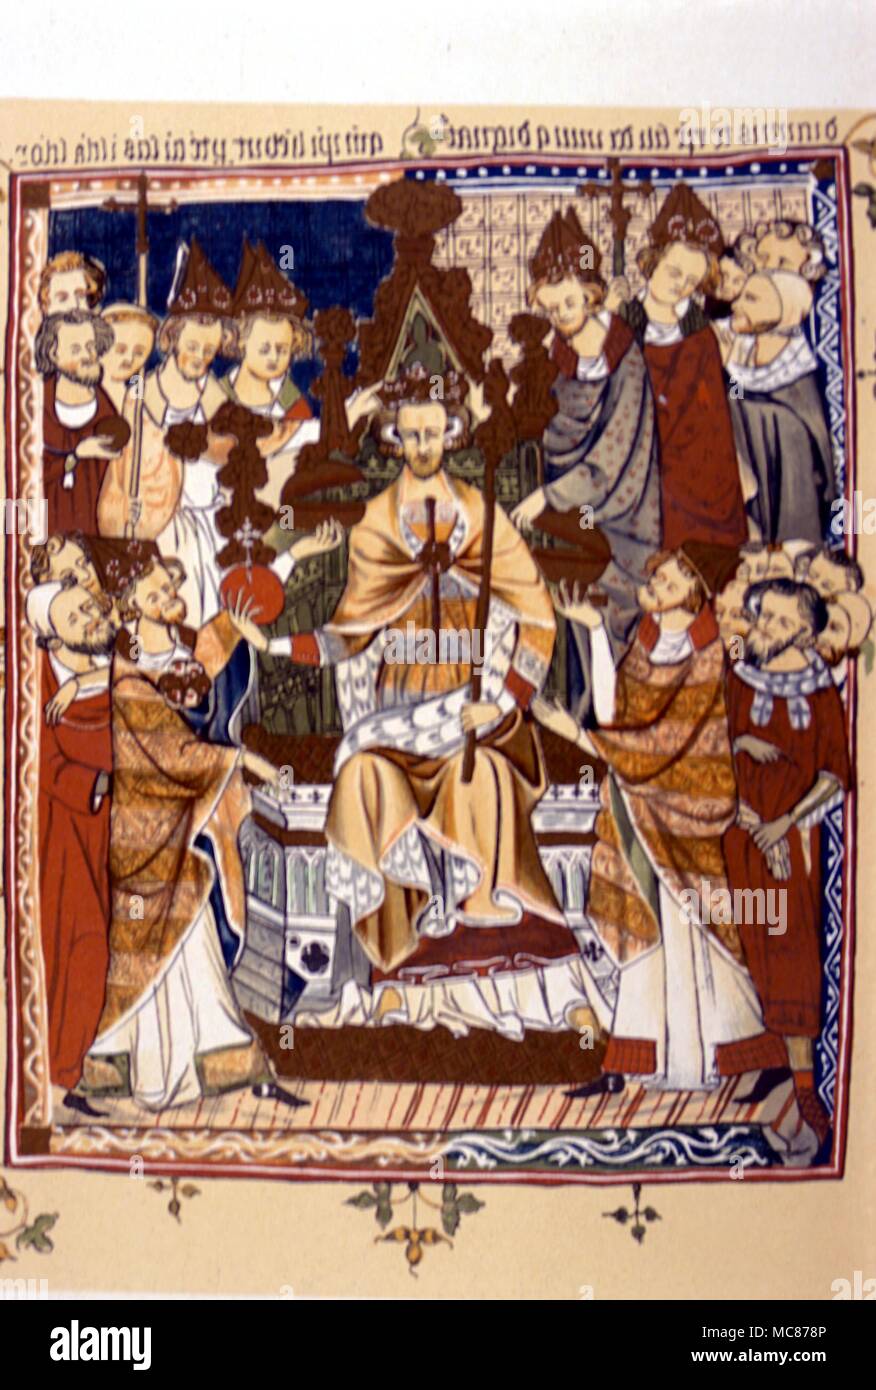 Histoire - BRITISH le couronnement d'un roi. Début du 14ème siècle, dans un 19e siècle copie de la lithographie, de Corpus Christi MSS. Cambridge. Banque D'Images